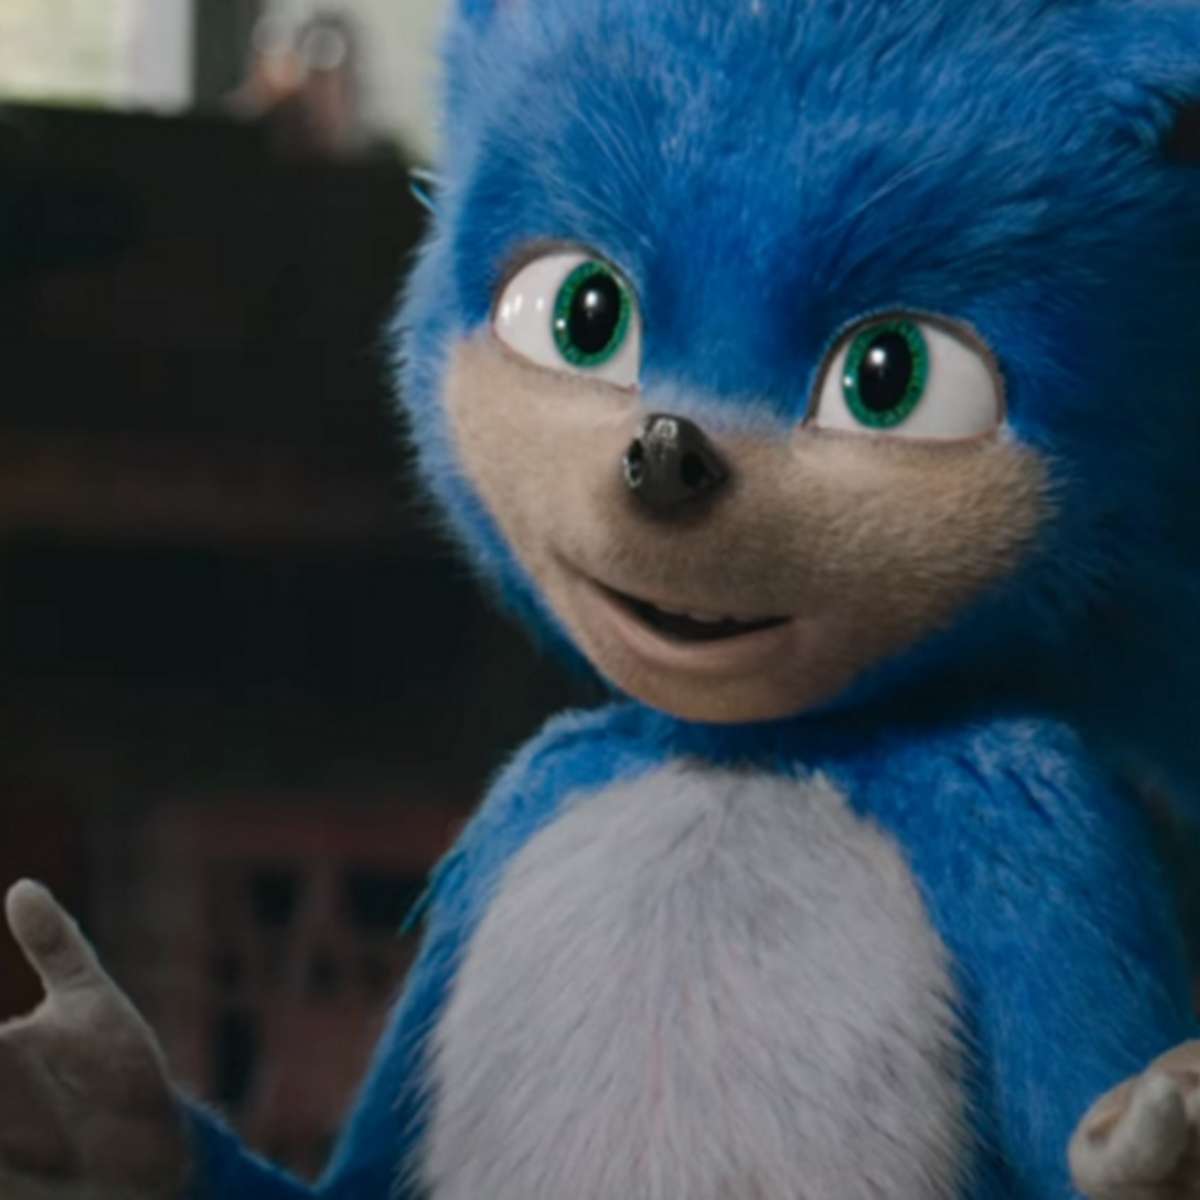 Depois de críticas, visual de Sonic em filme deve mudar - Canaltech